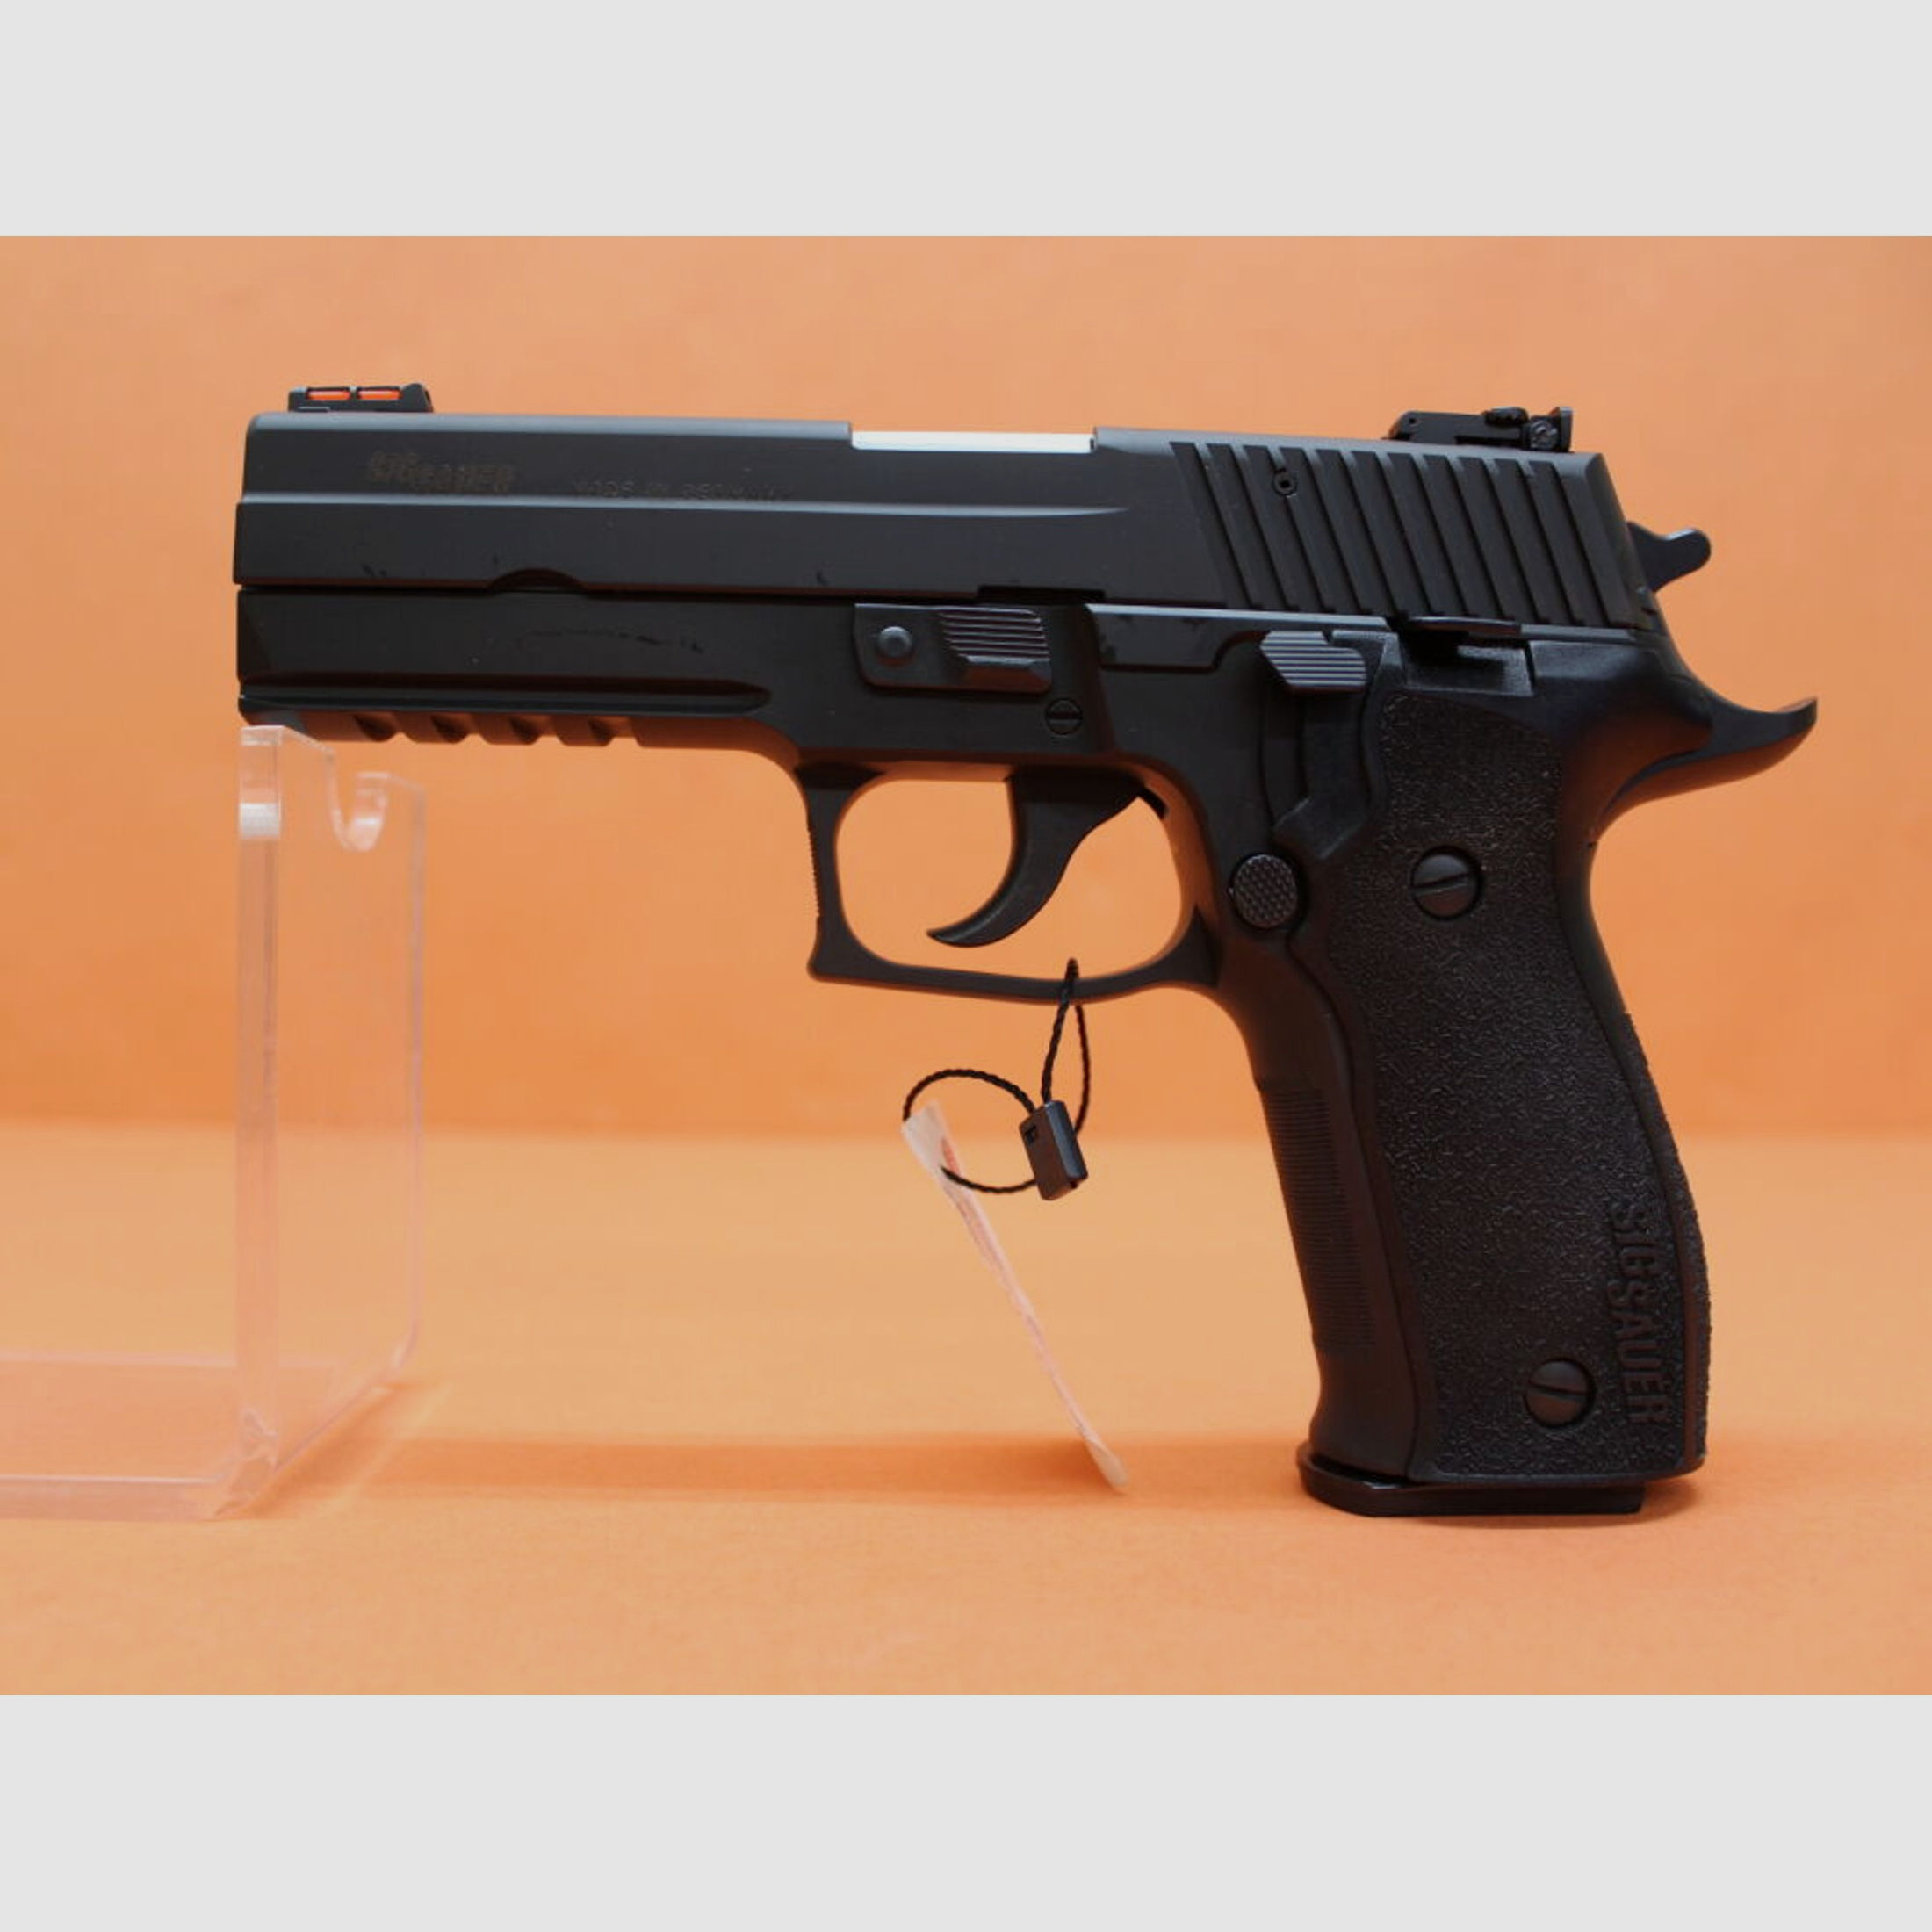 SIG Sauer	 Ha.Pistole 9mmLuger SIG Sauer P226LDC II 112mm Lauf, Schwarz, incl. Range Package! (9mmPara/9x19)